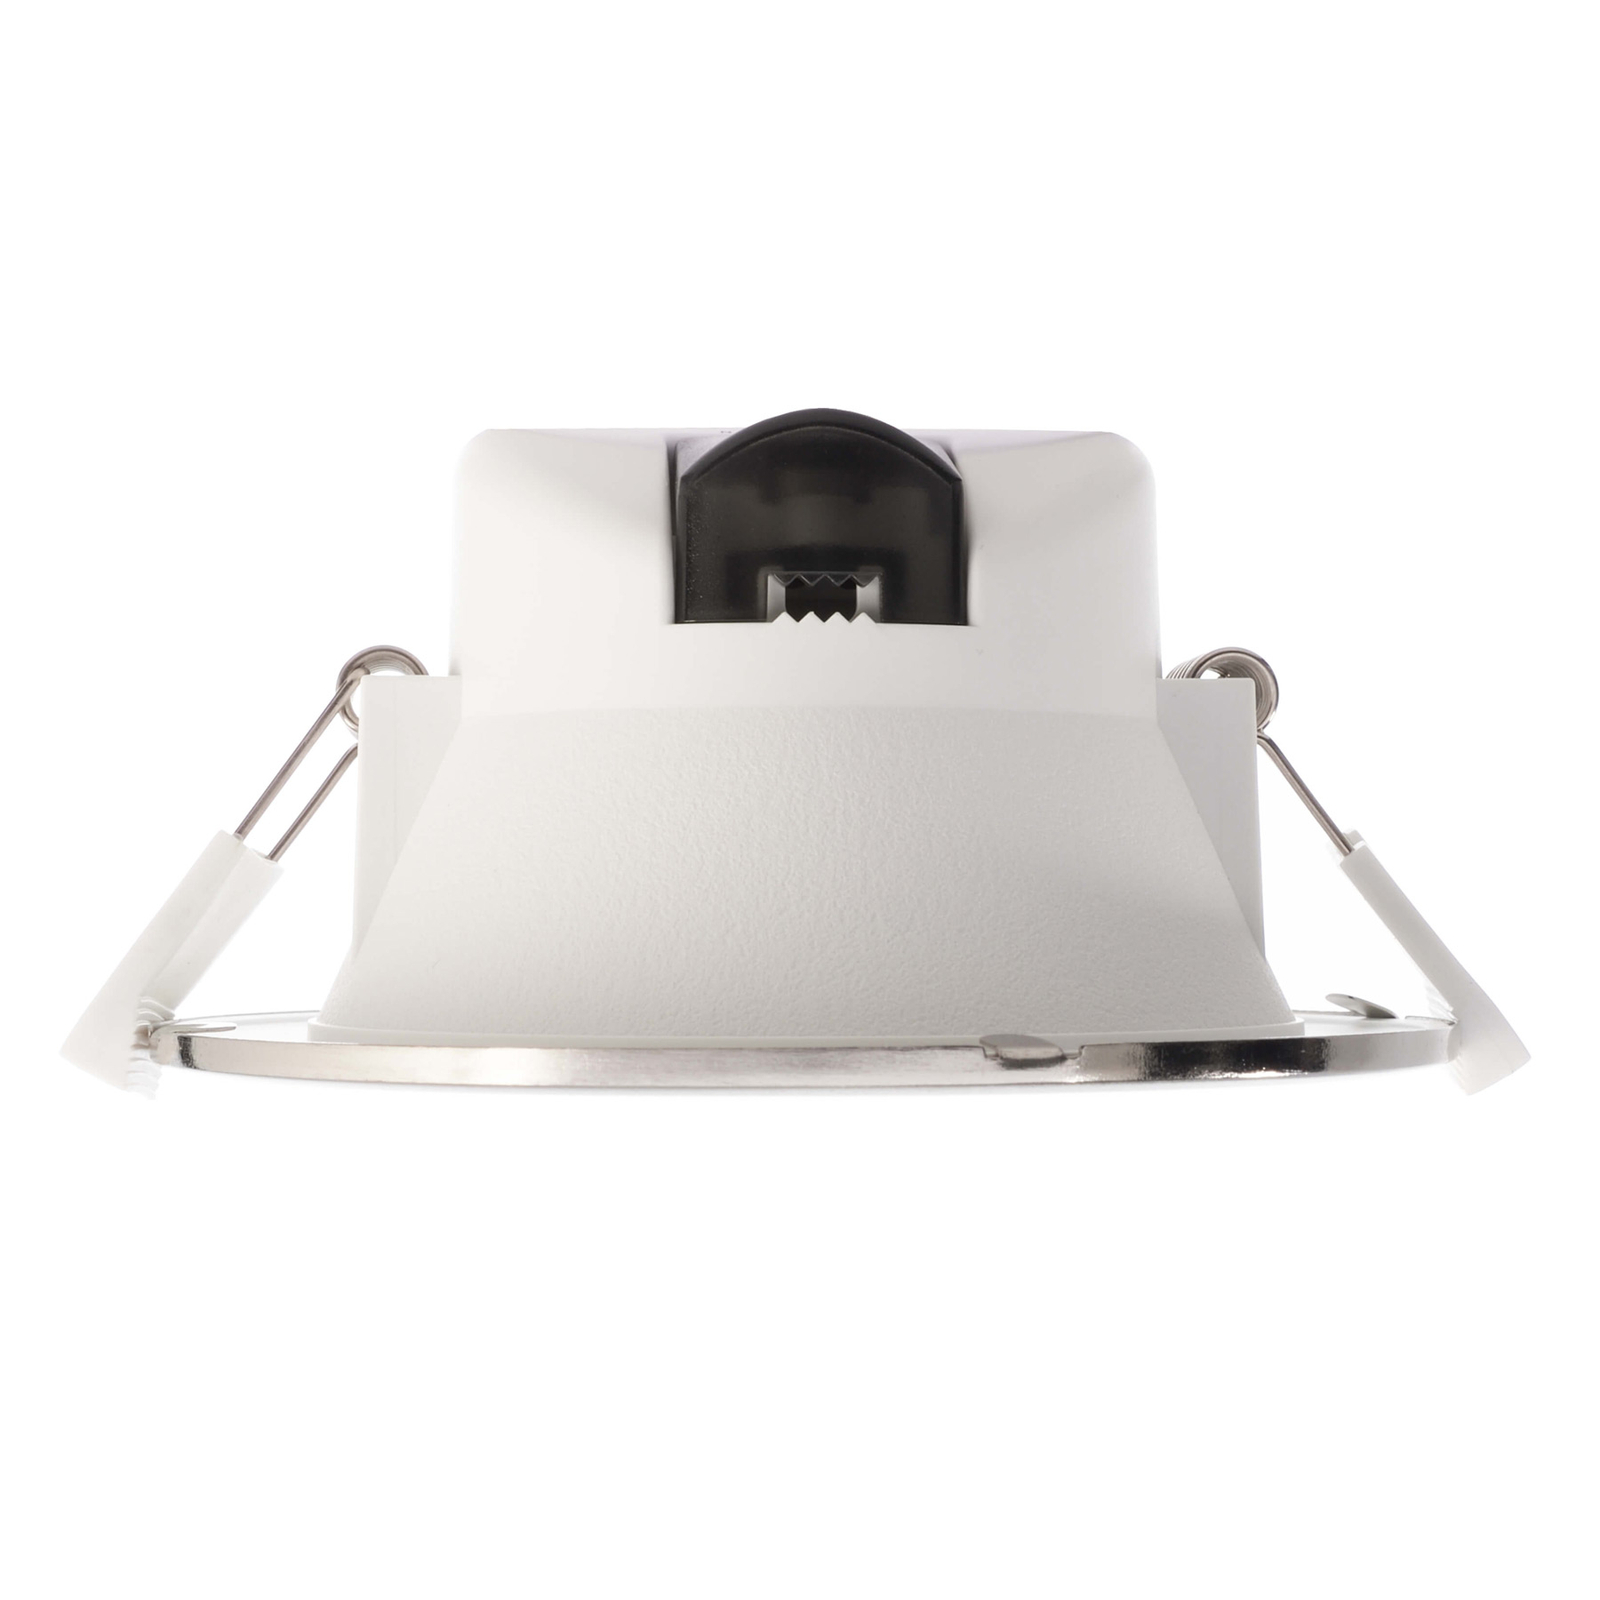 LED podhledové svítidlo Acrux 120, bílá, Ø 14,5 cm